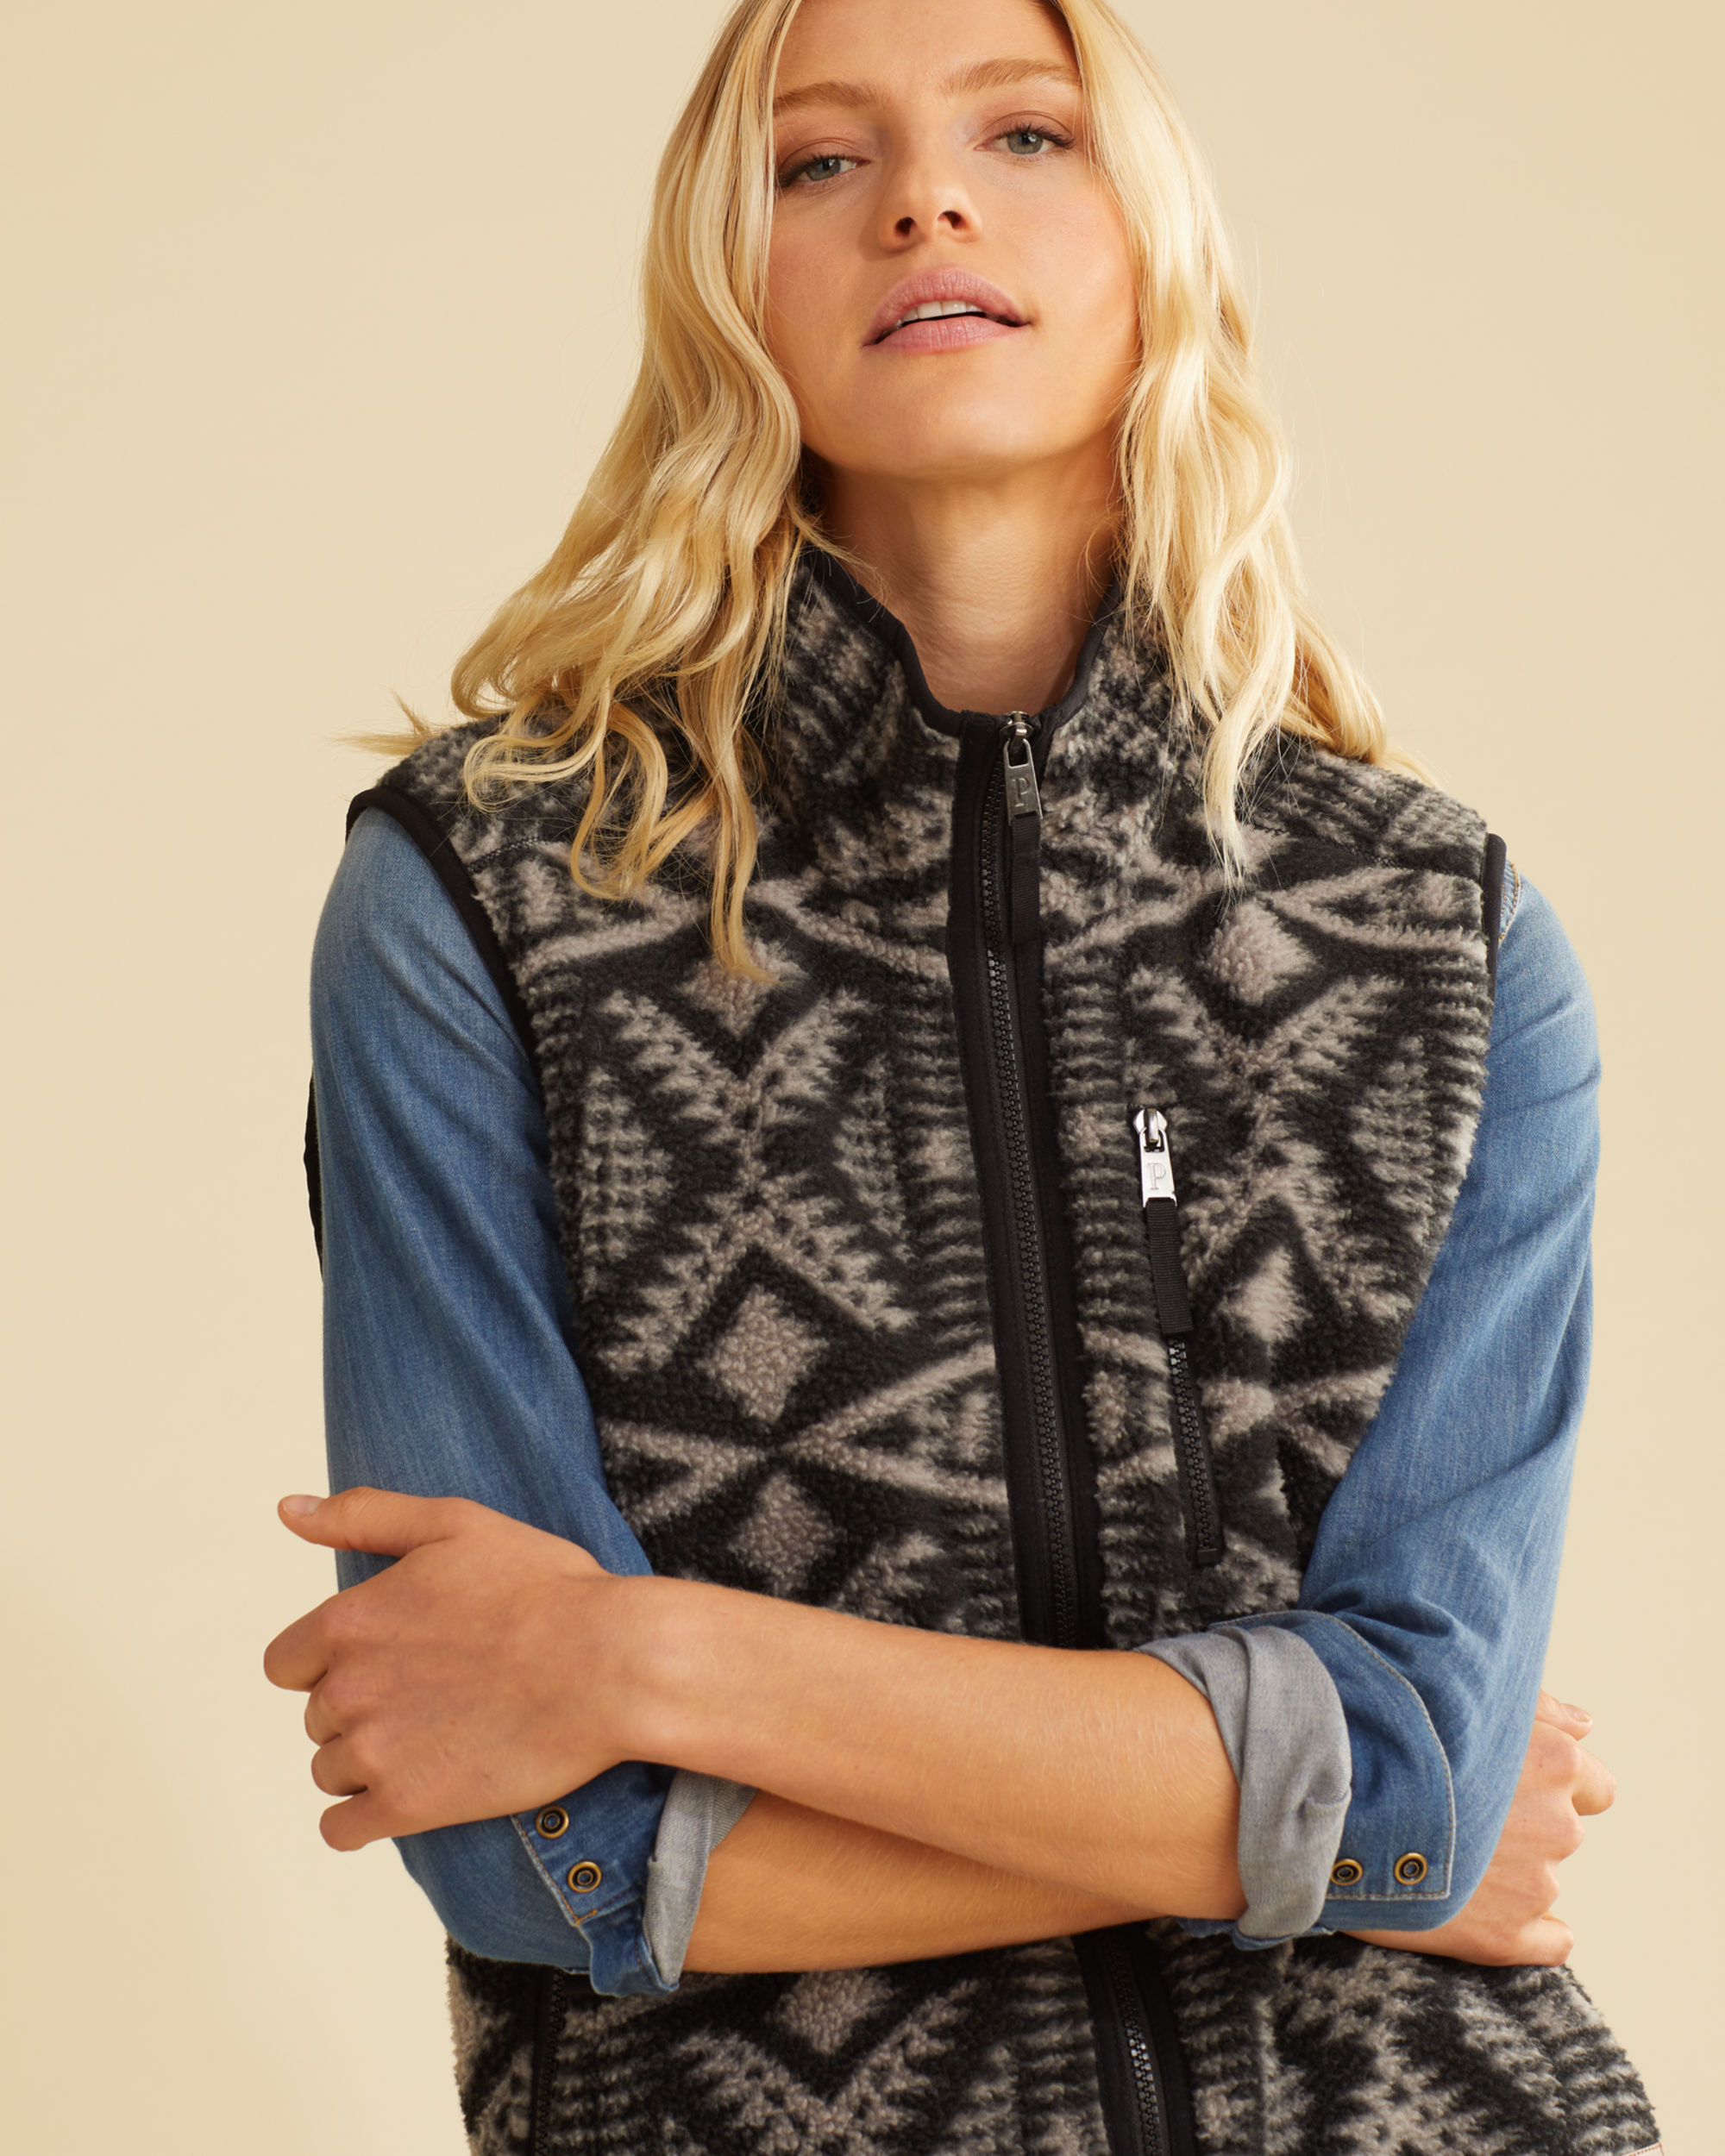 Unisex Fleece Vest, Lightweight, zip-front Fleece